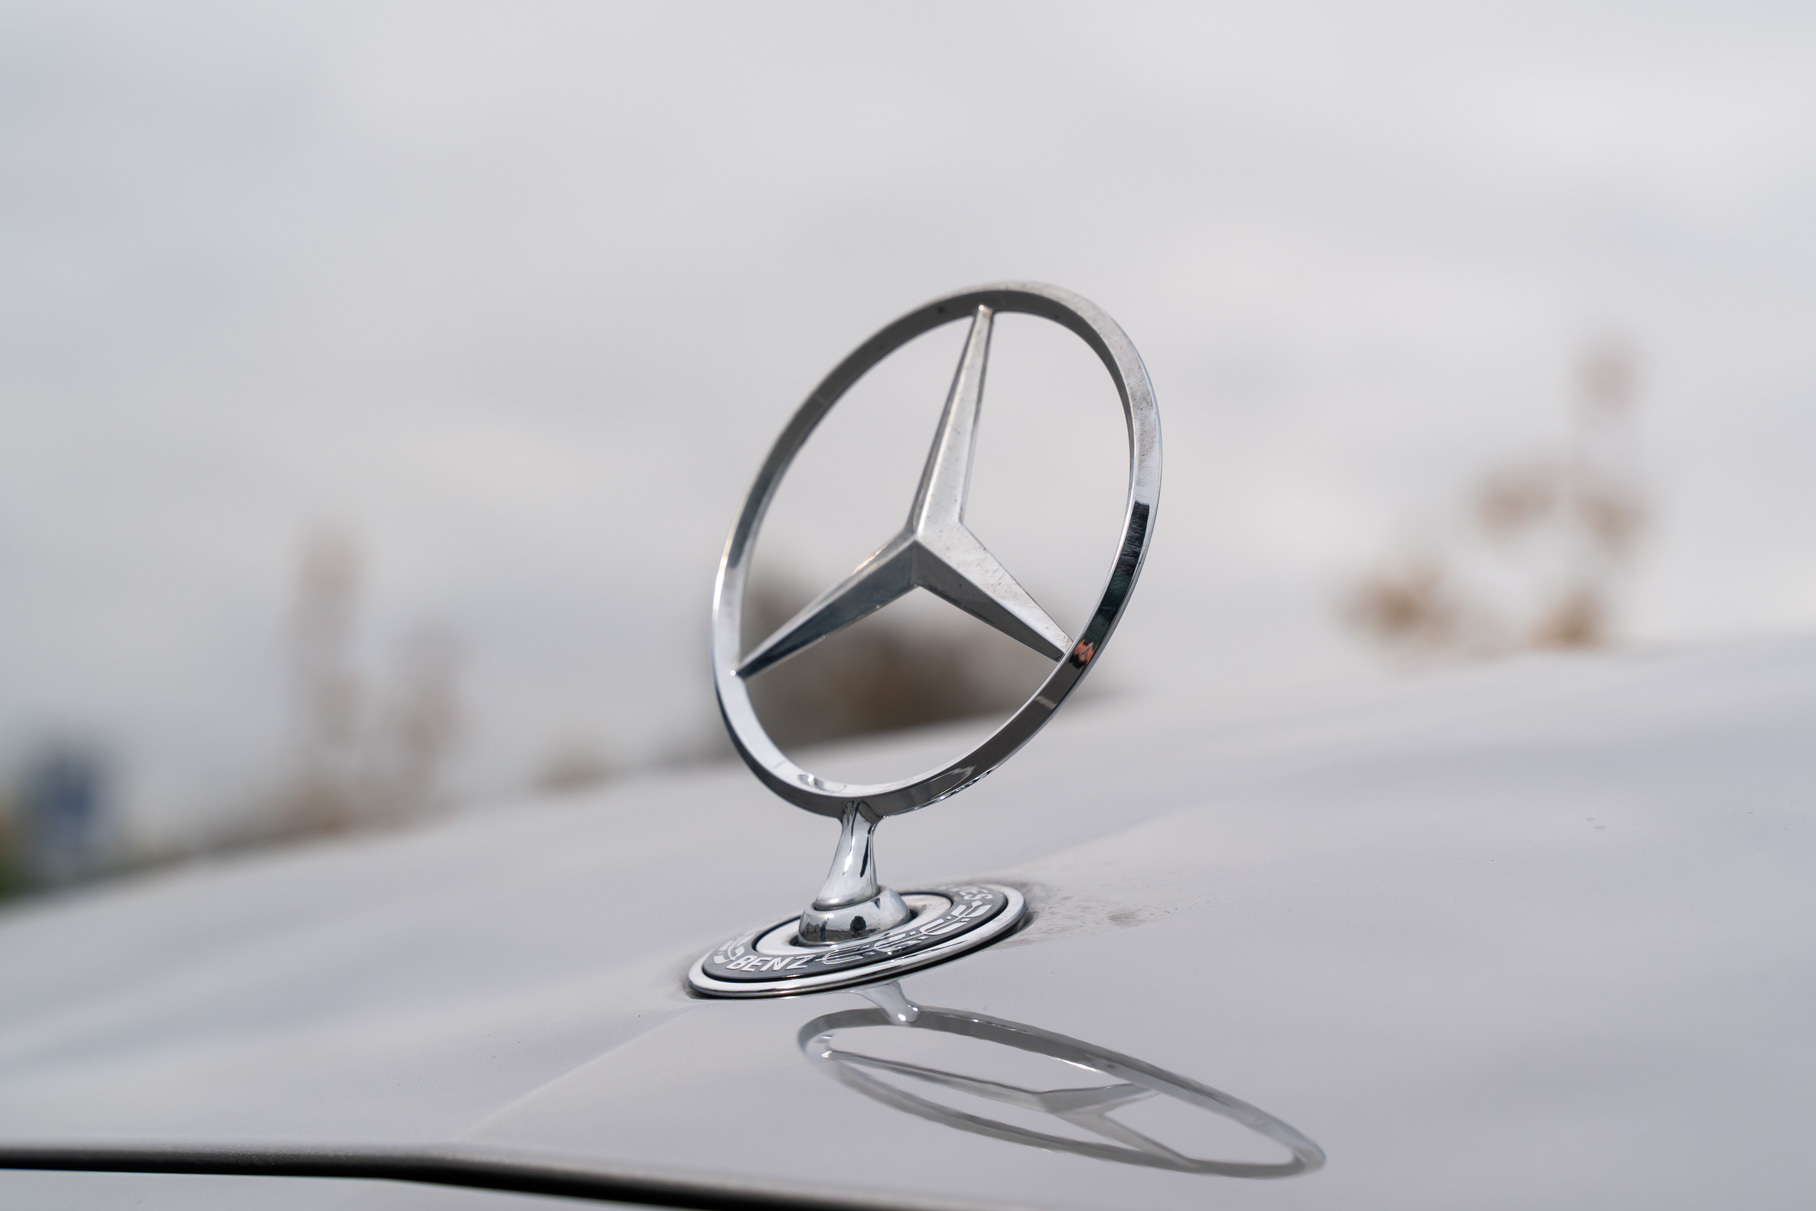 Кто обновился лучше? Тест бизнес седанов Mercedes-Benz и Volvo